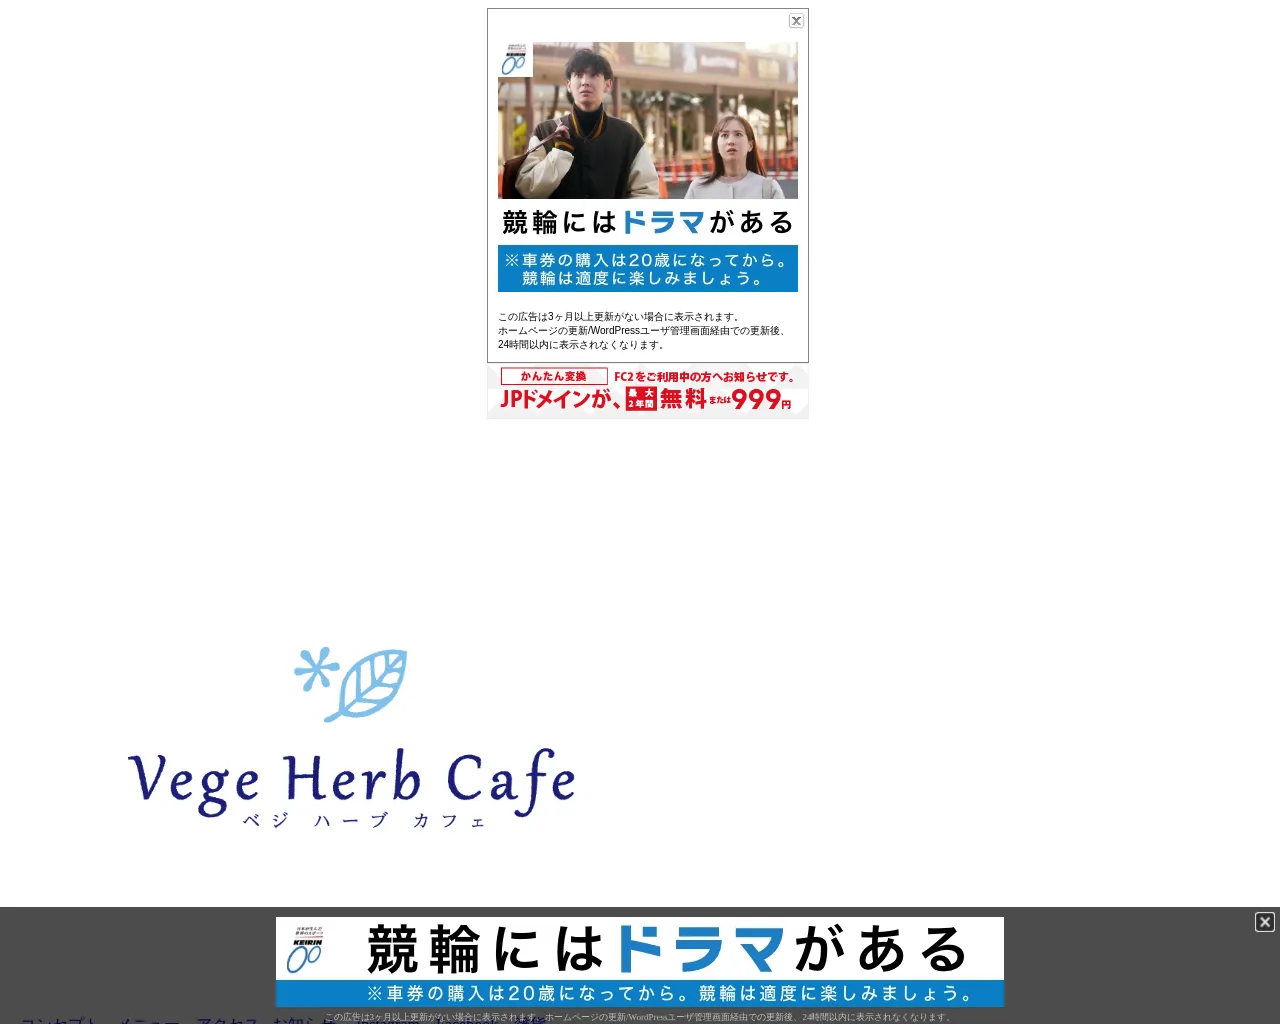 Vege Herb Cafe site